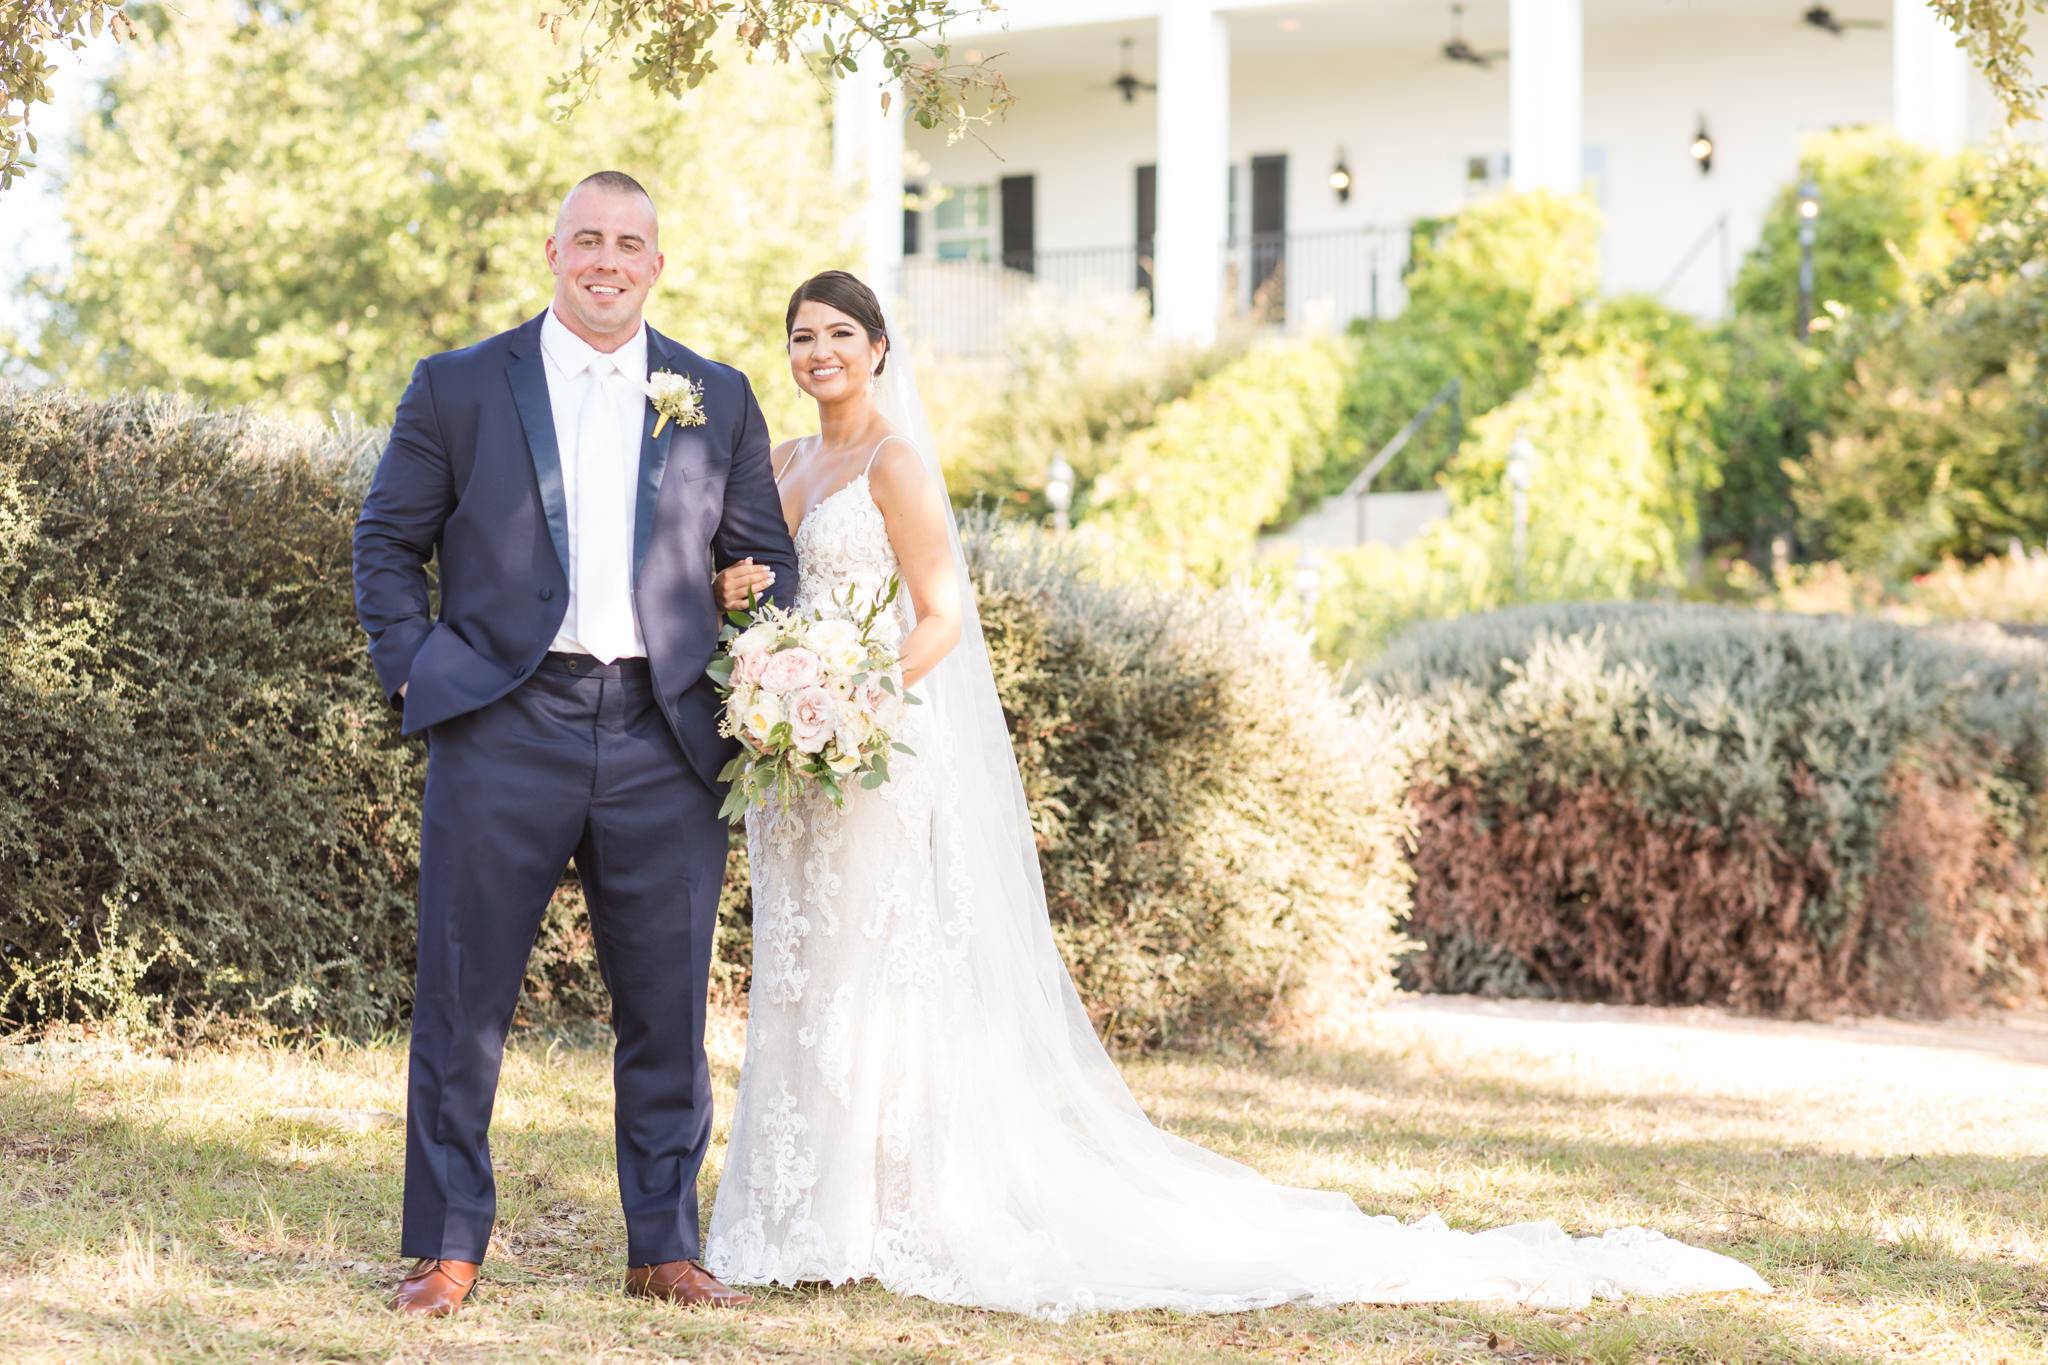 A Wedding at Kendall Point in Boerne, TX by Dawn Elizabeth Studios, Boerne Wedding Photographer